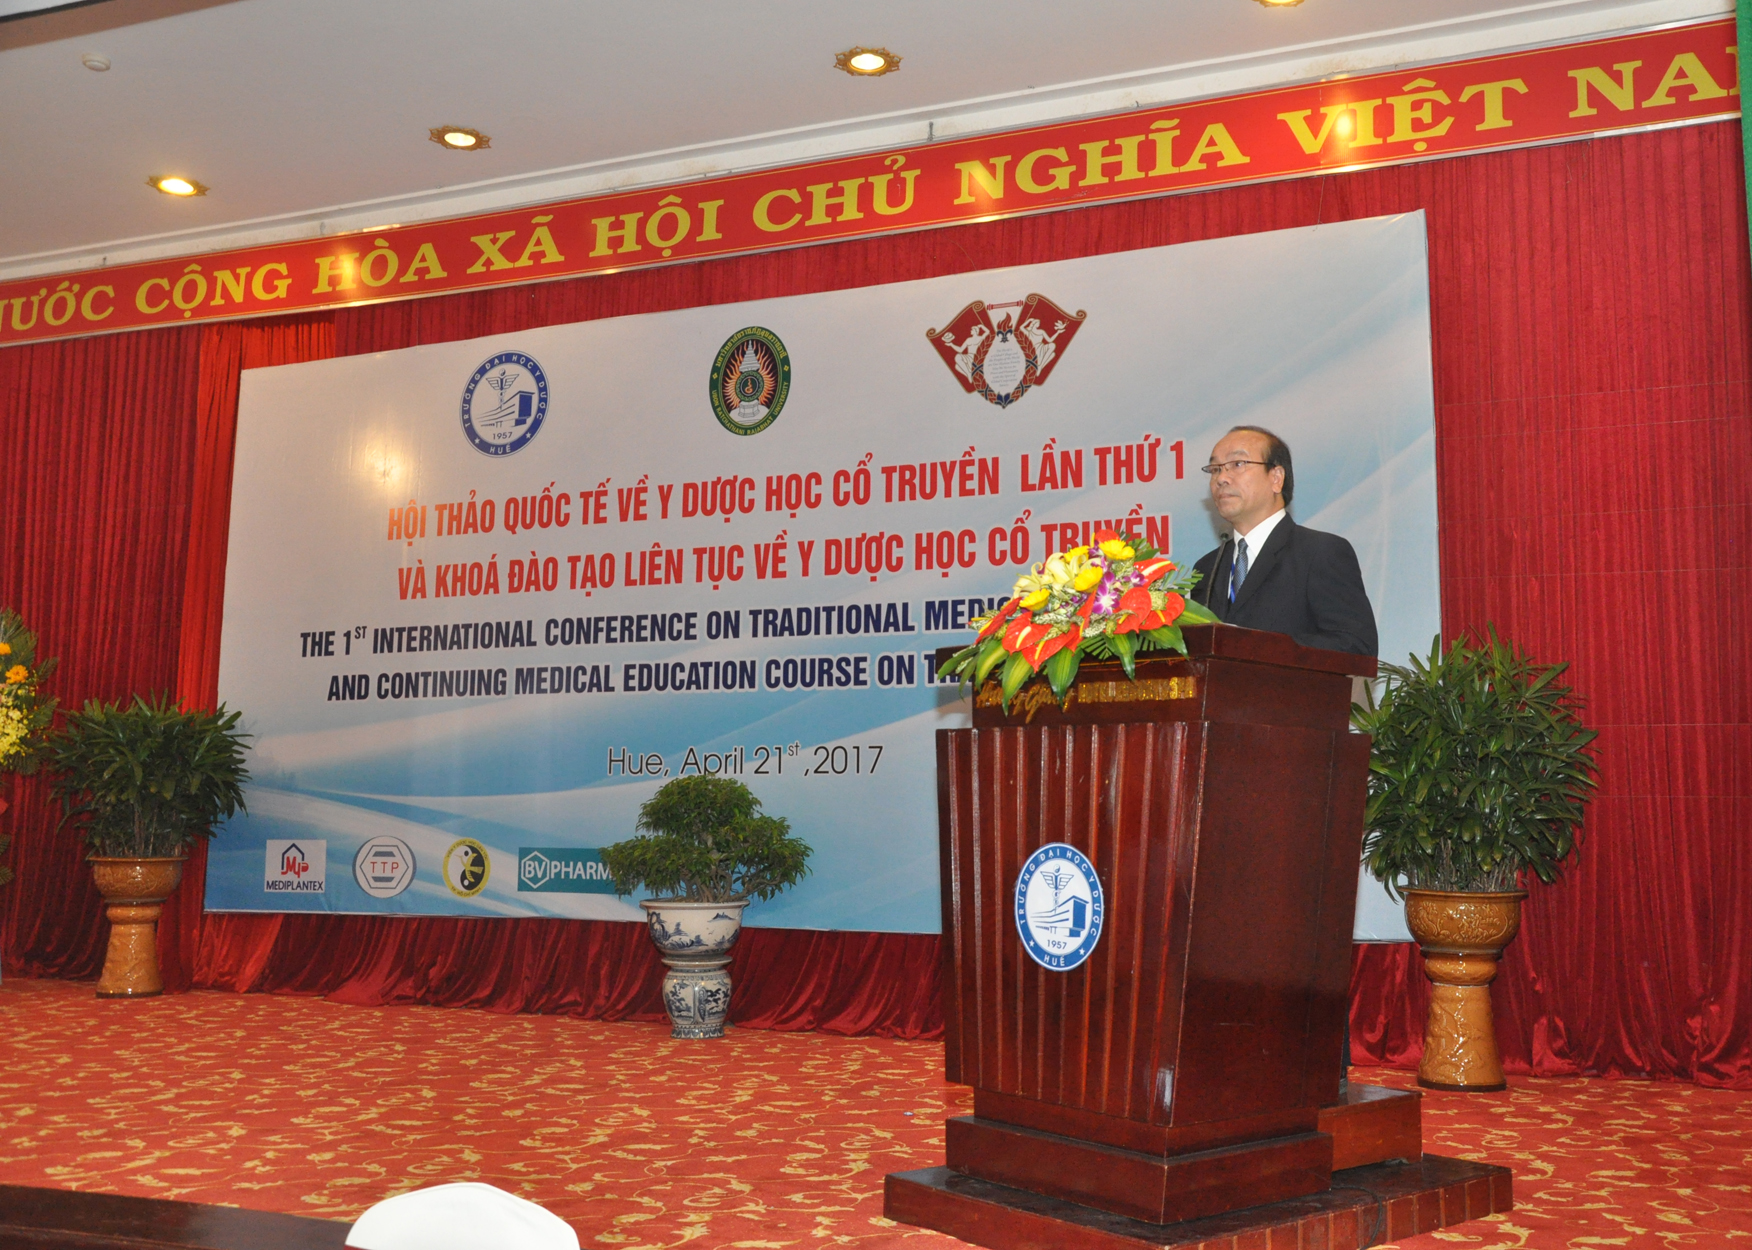 GS. Võ Tam, Phó Hiệu trưởng Trường Đại học Y Dược Huế, phát biểu khai mạc tại Hội thảo